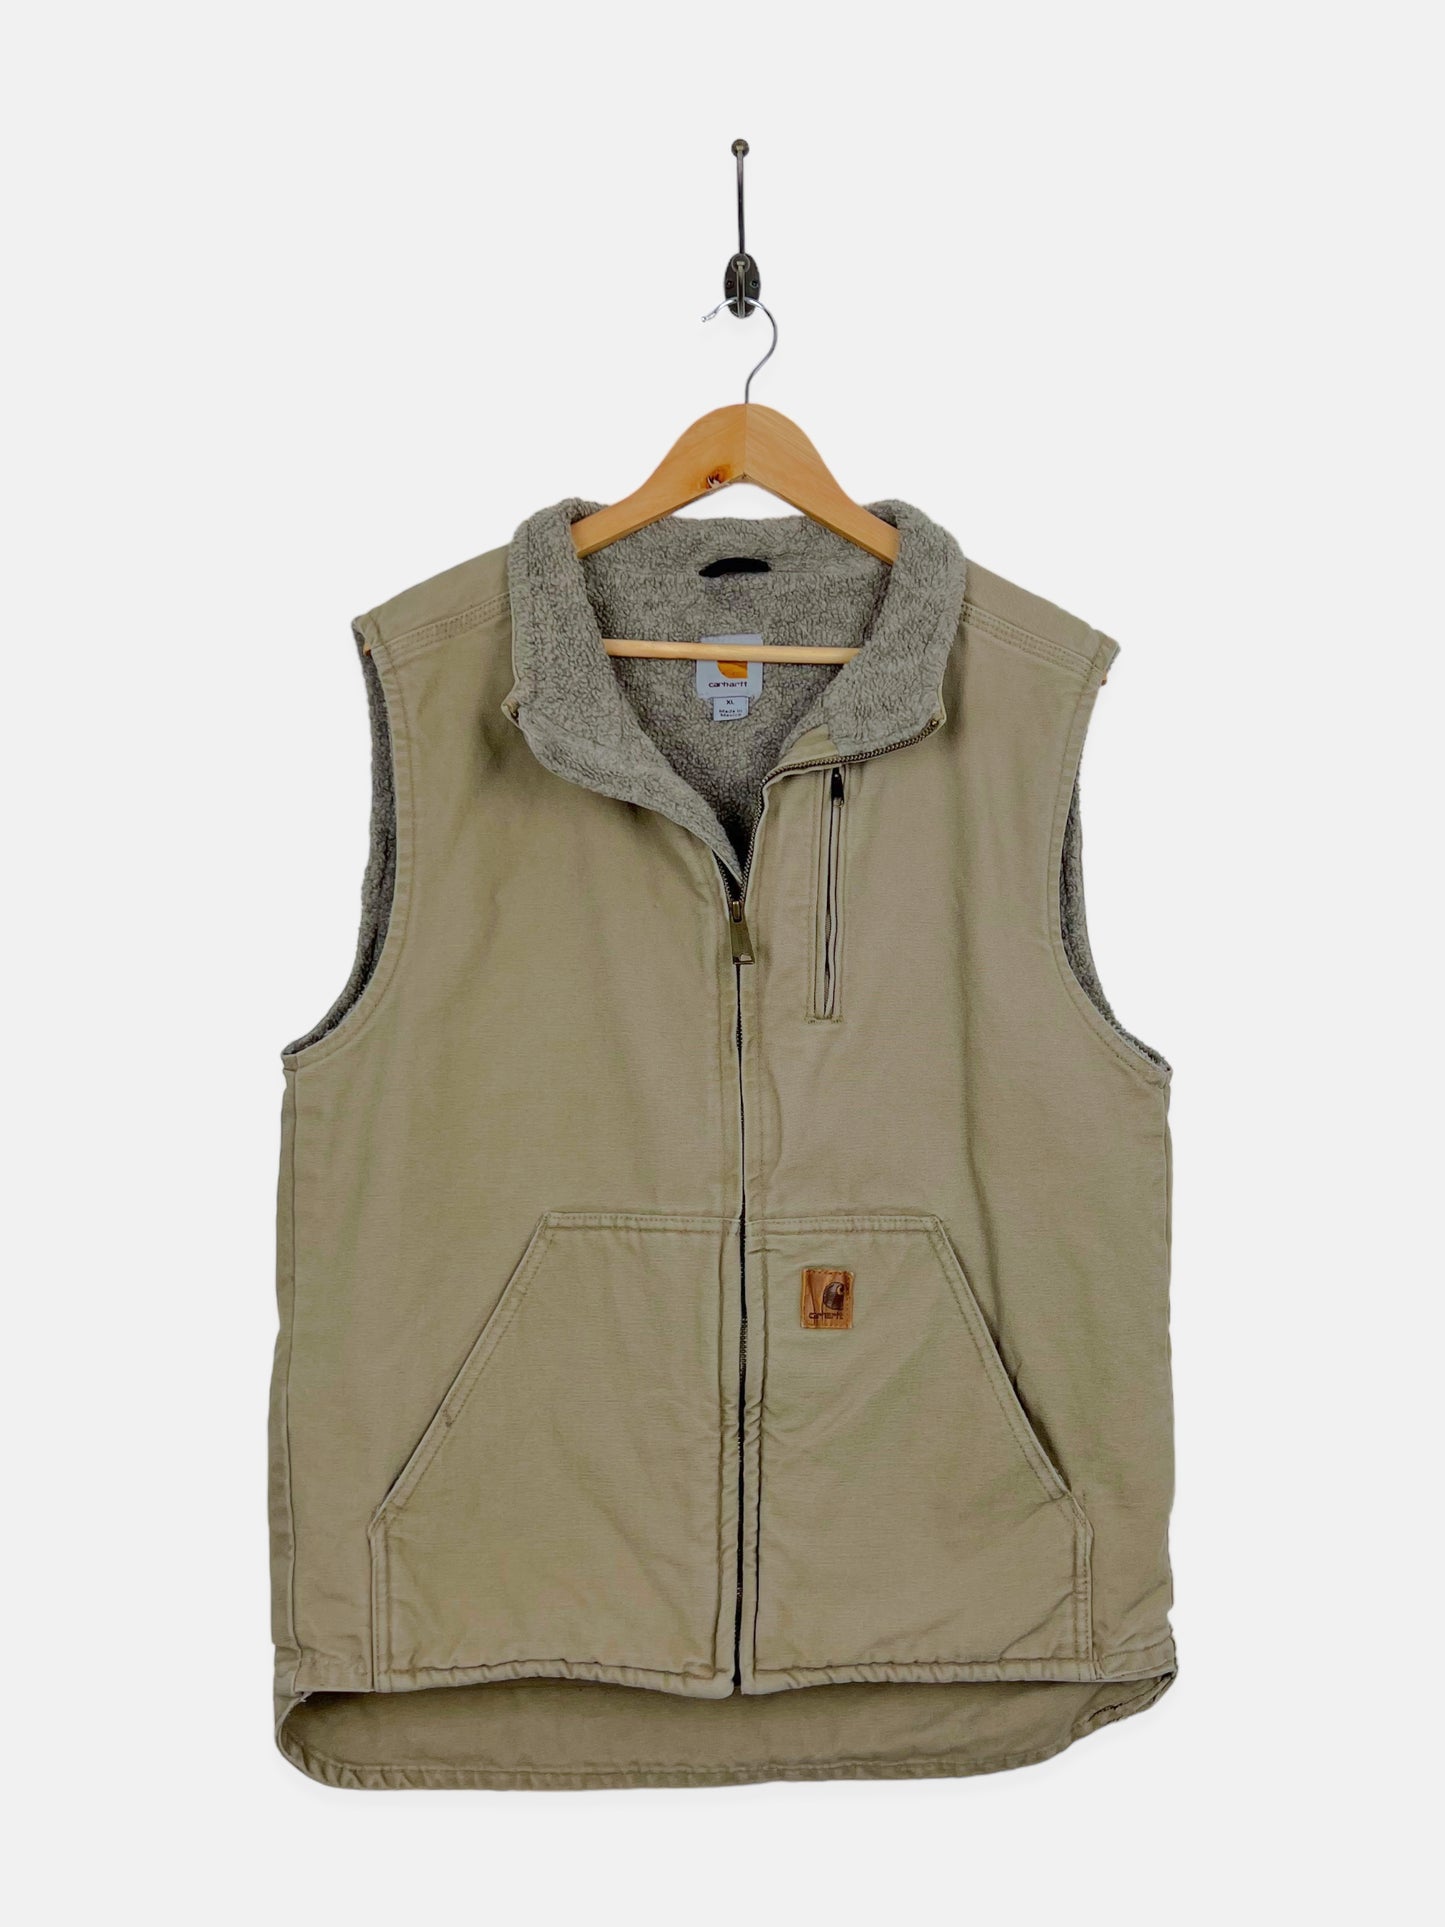 90's Carhartt Heavy Duty Sherpa Lined Vintage Vest Size M